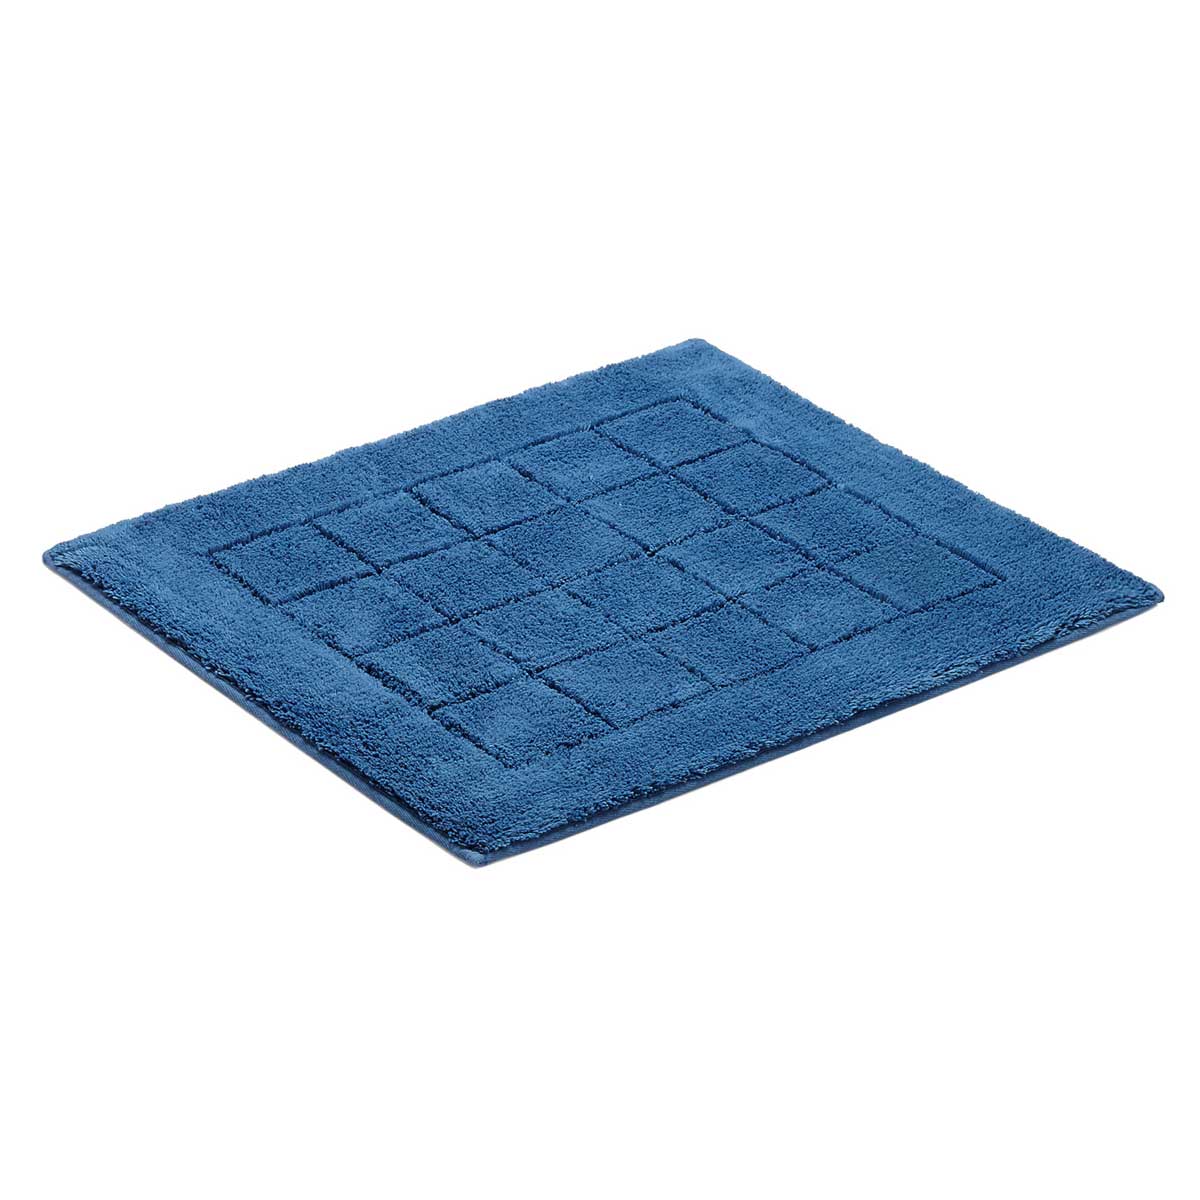 Коврик для ванной комнаты Vossen Exclusive 55x65см, синий коврик для ванной комнаты coins синий 55 50 ridder